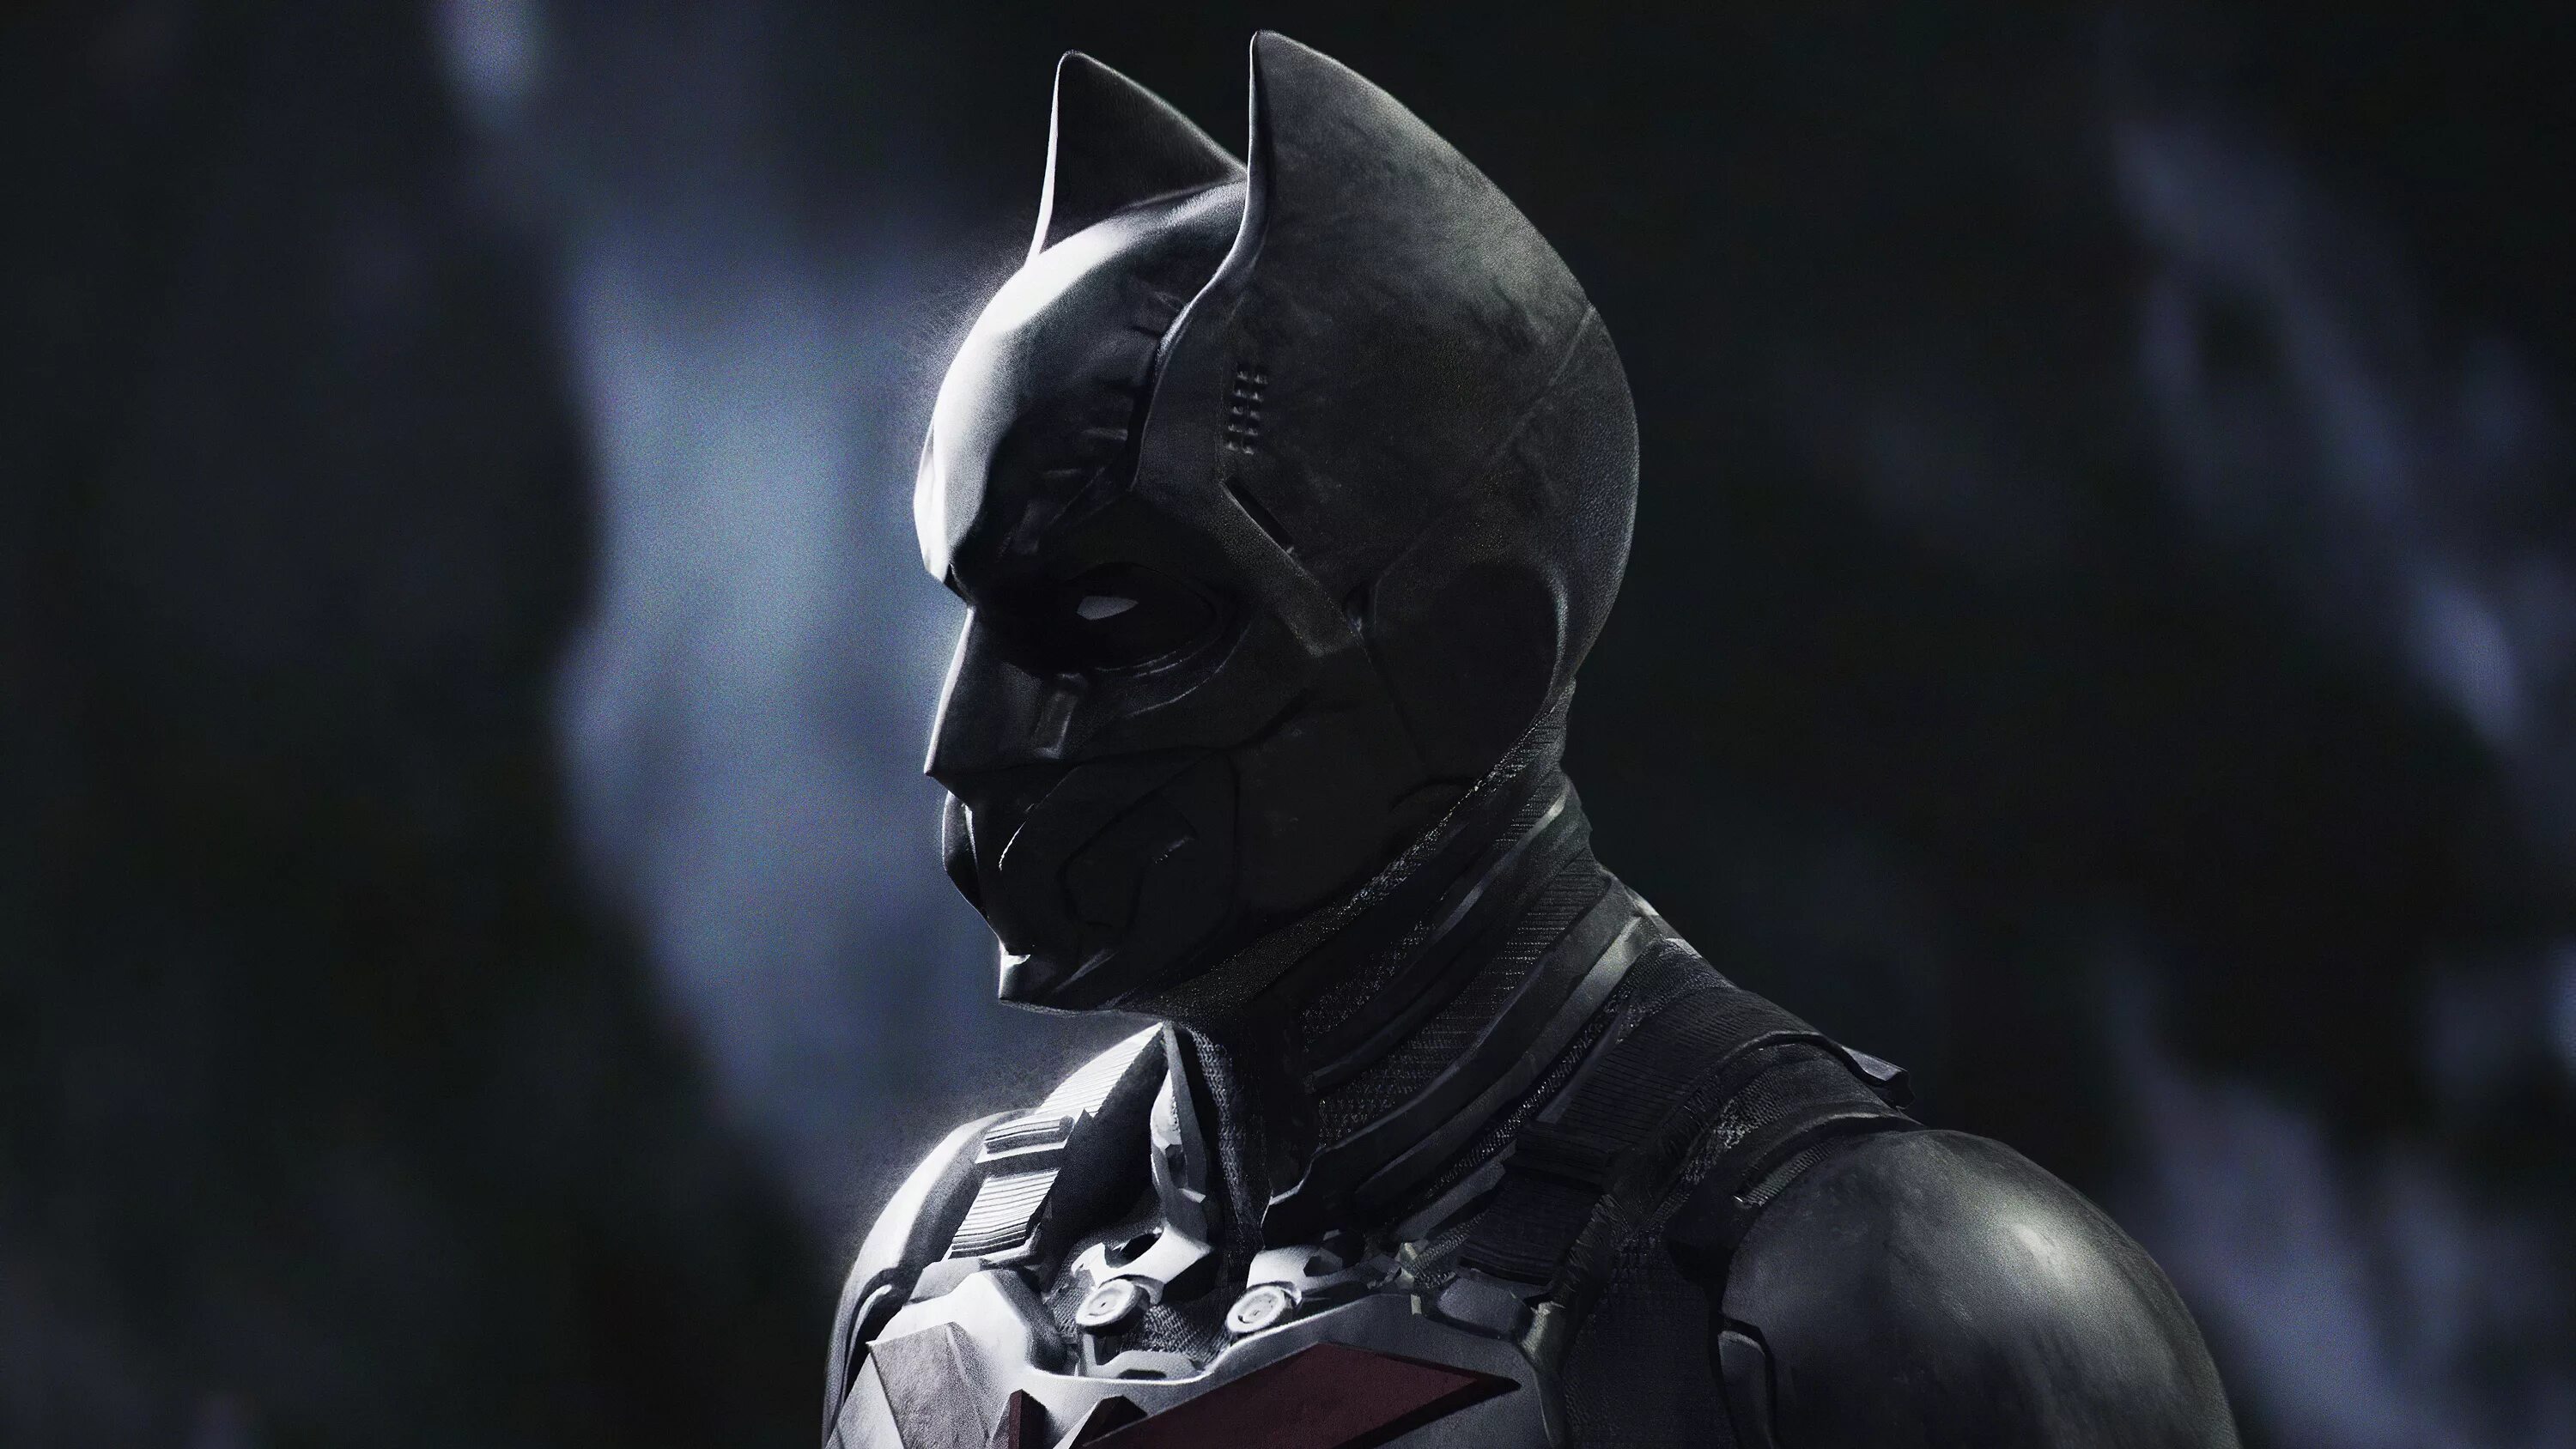 Атлас бэтмен. Бэтмен будущего Нолан. Бэтмен будущего Кристофер Нолан. Бэтмен Бейонд. Тёмный рыцарь костюм Бэтмена Нолан.